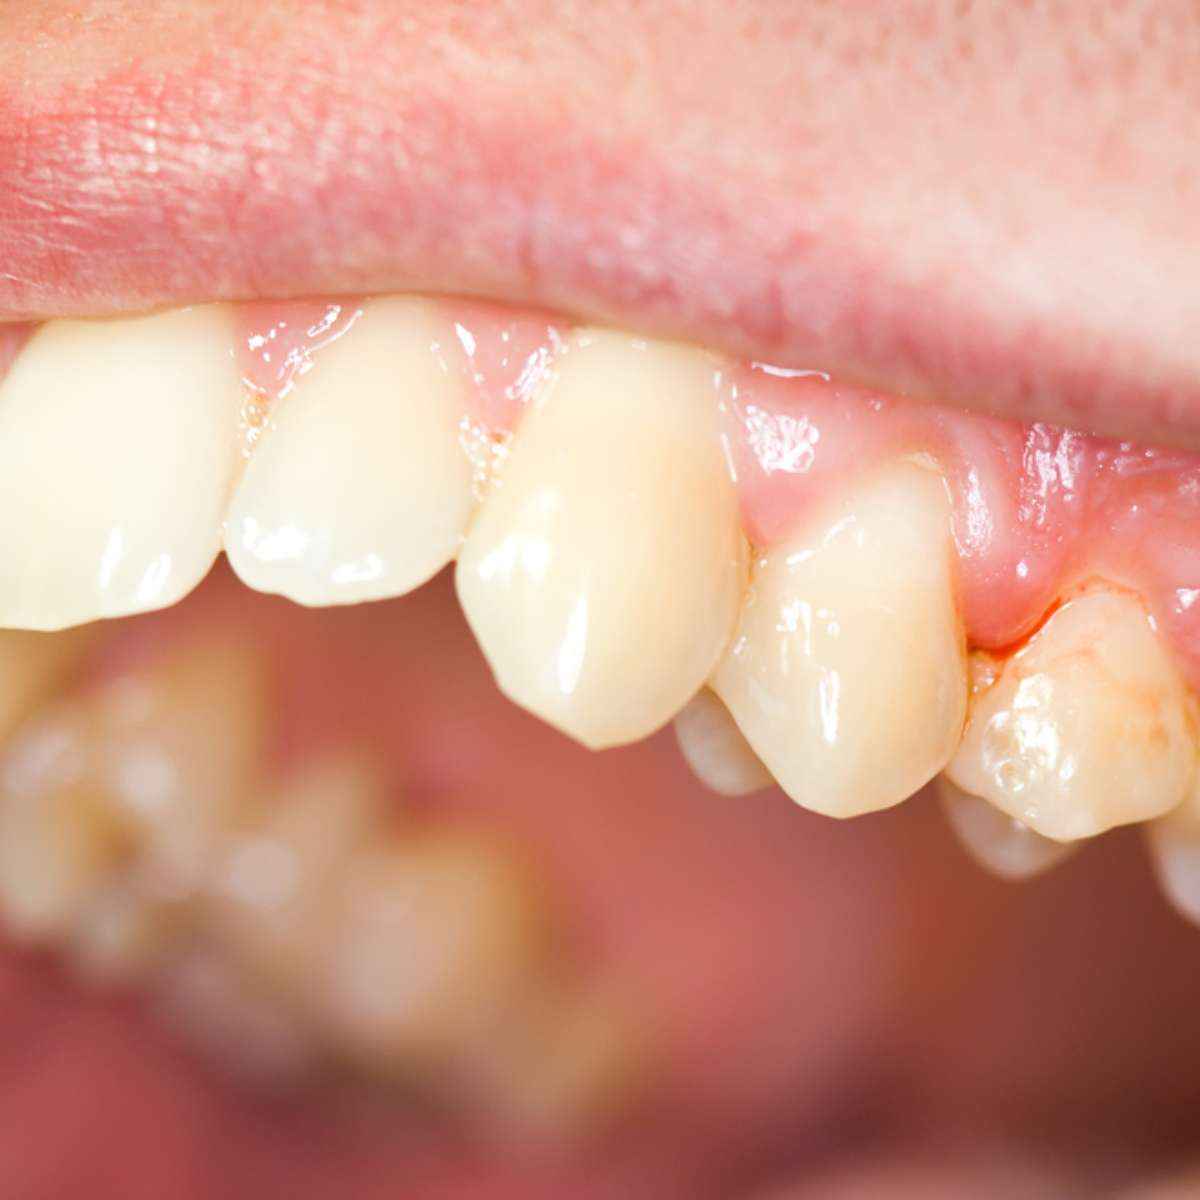  At have en drøm om en blødende tand: Hvad betyder det?